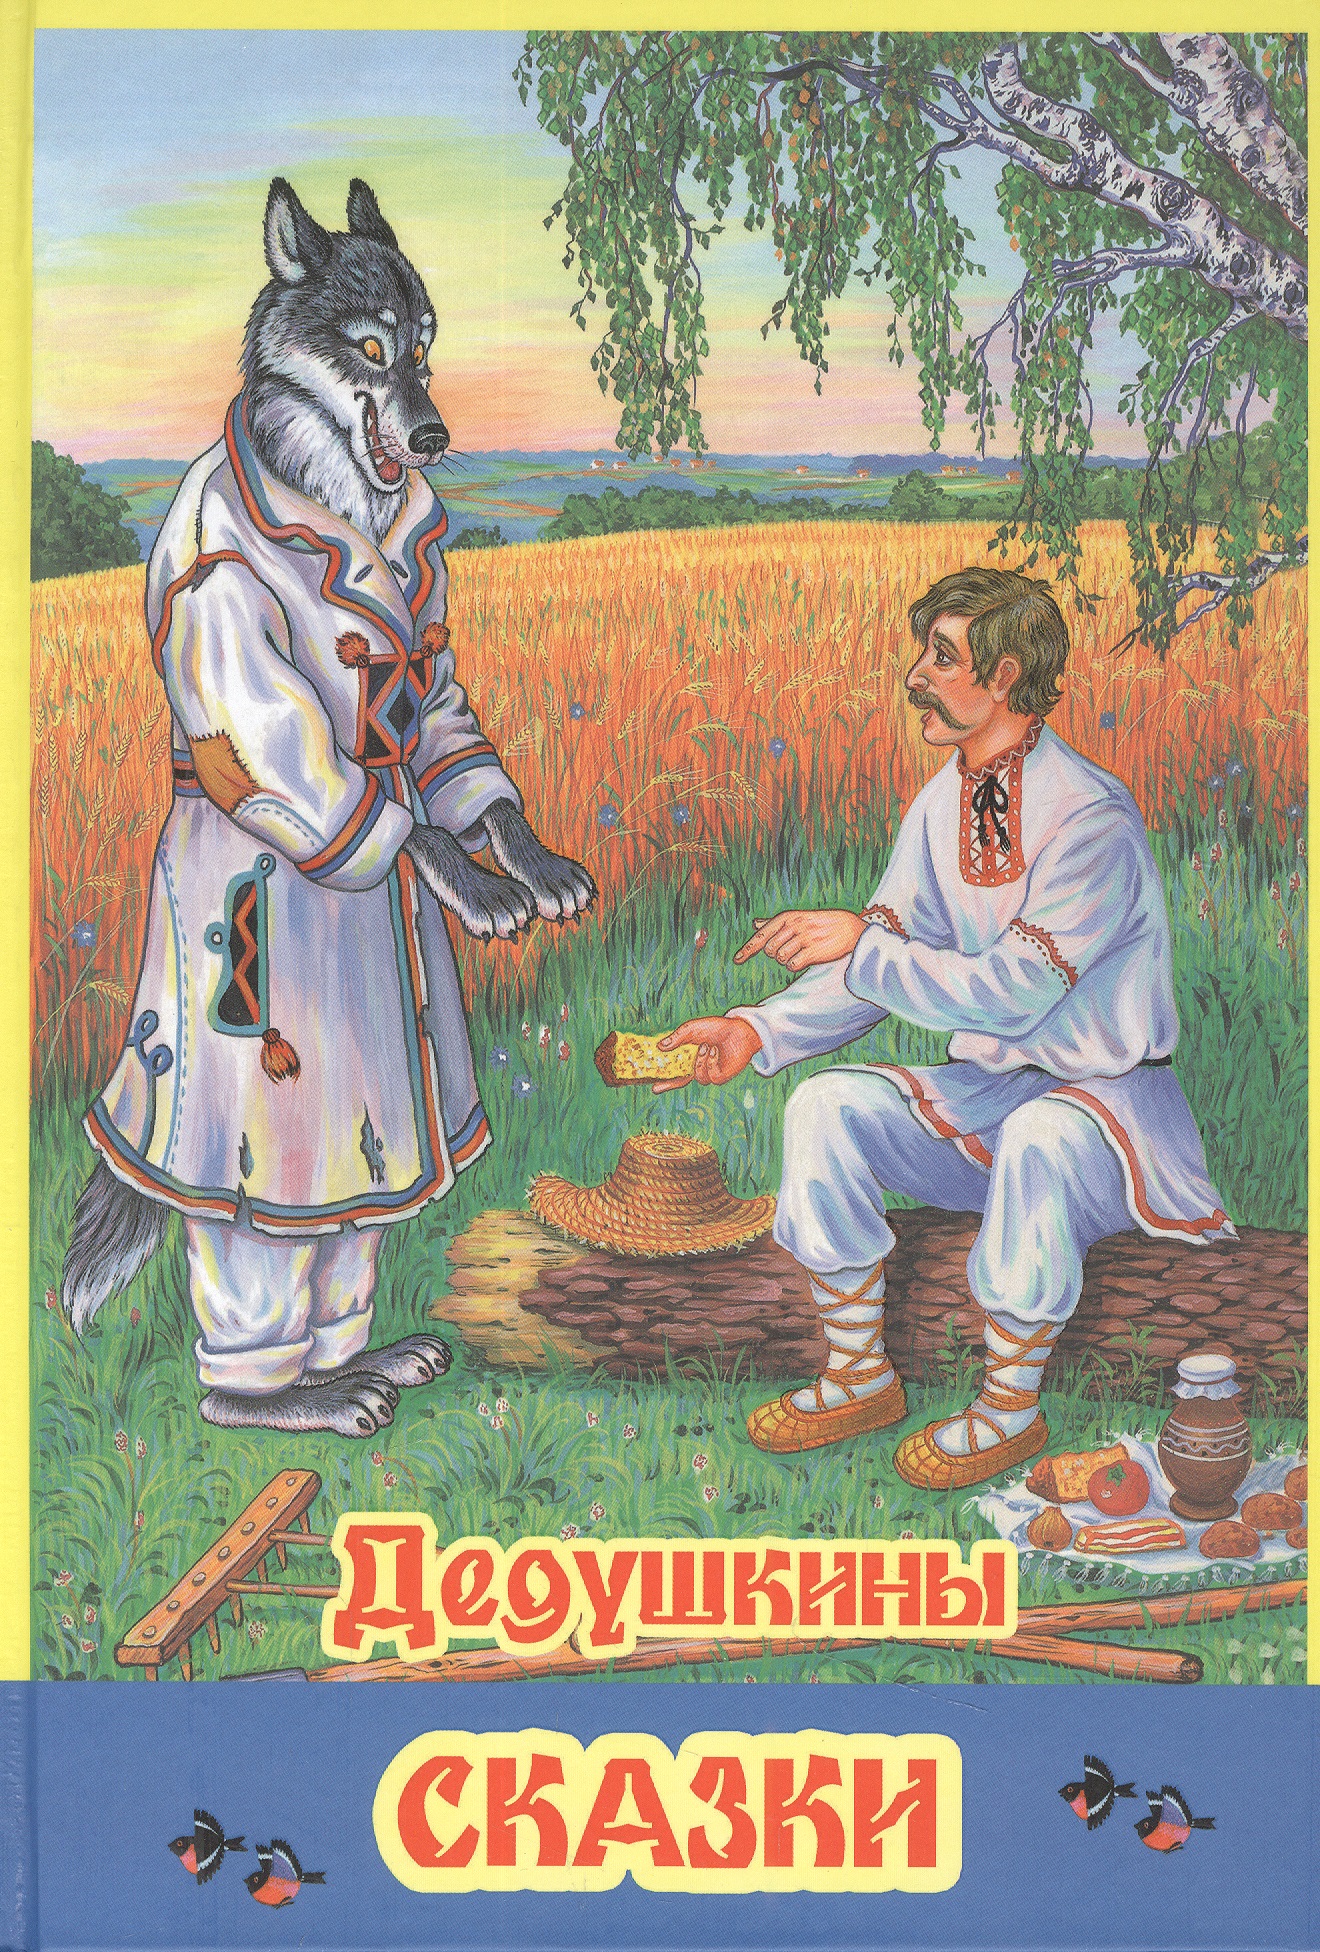 Легкий хлеб белорусская. Легкий хлеб белорусская народная сказка. Белорусская народная сказка легкий хлеб иллюстрации. Косарь и волк белорусских сказок. Легкий хлеб.